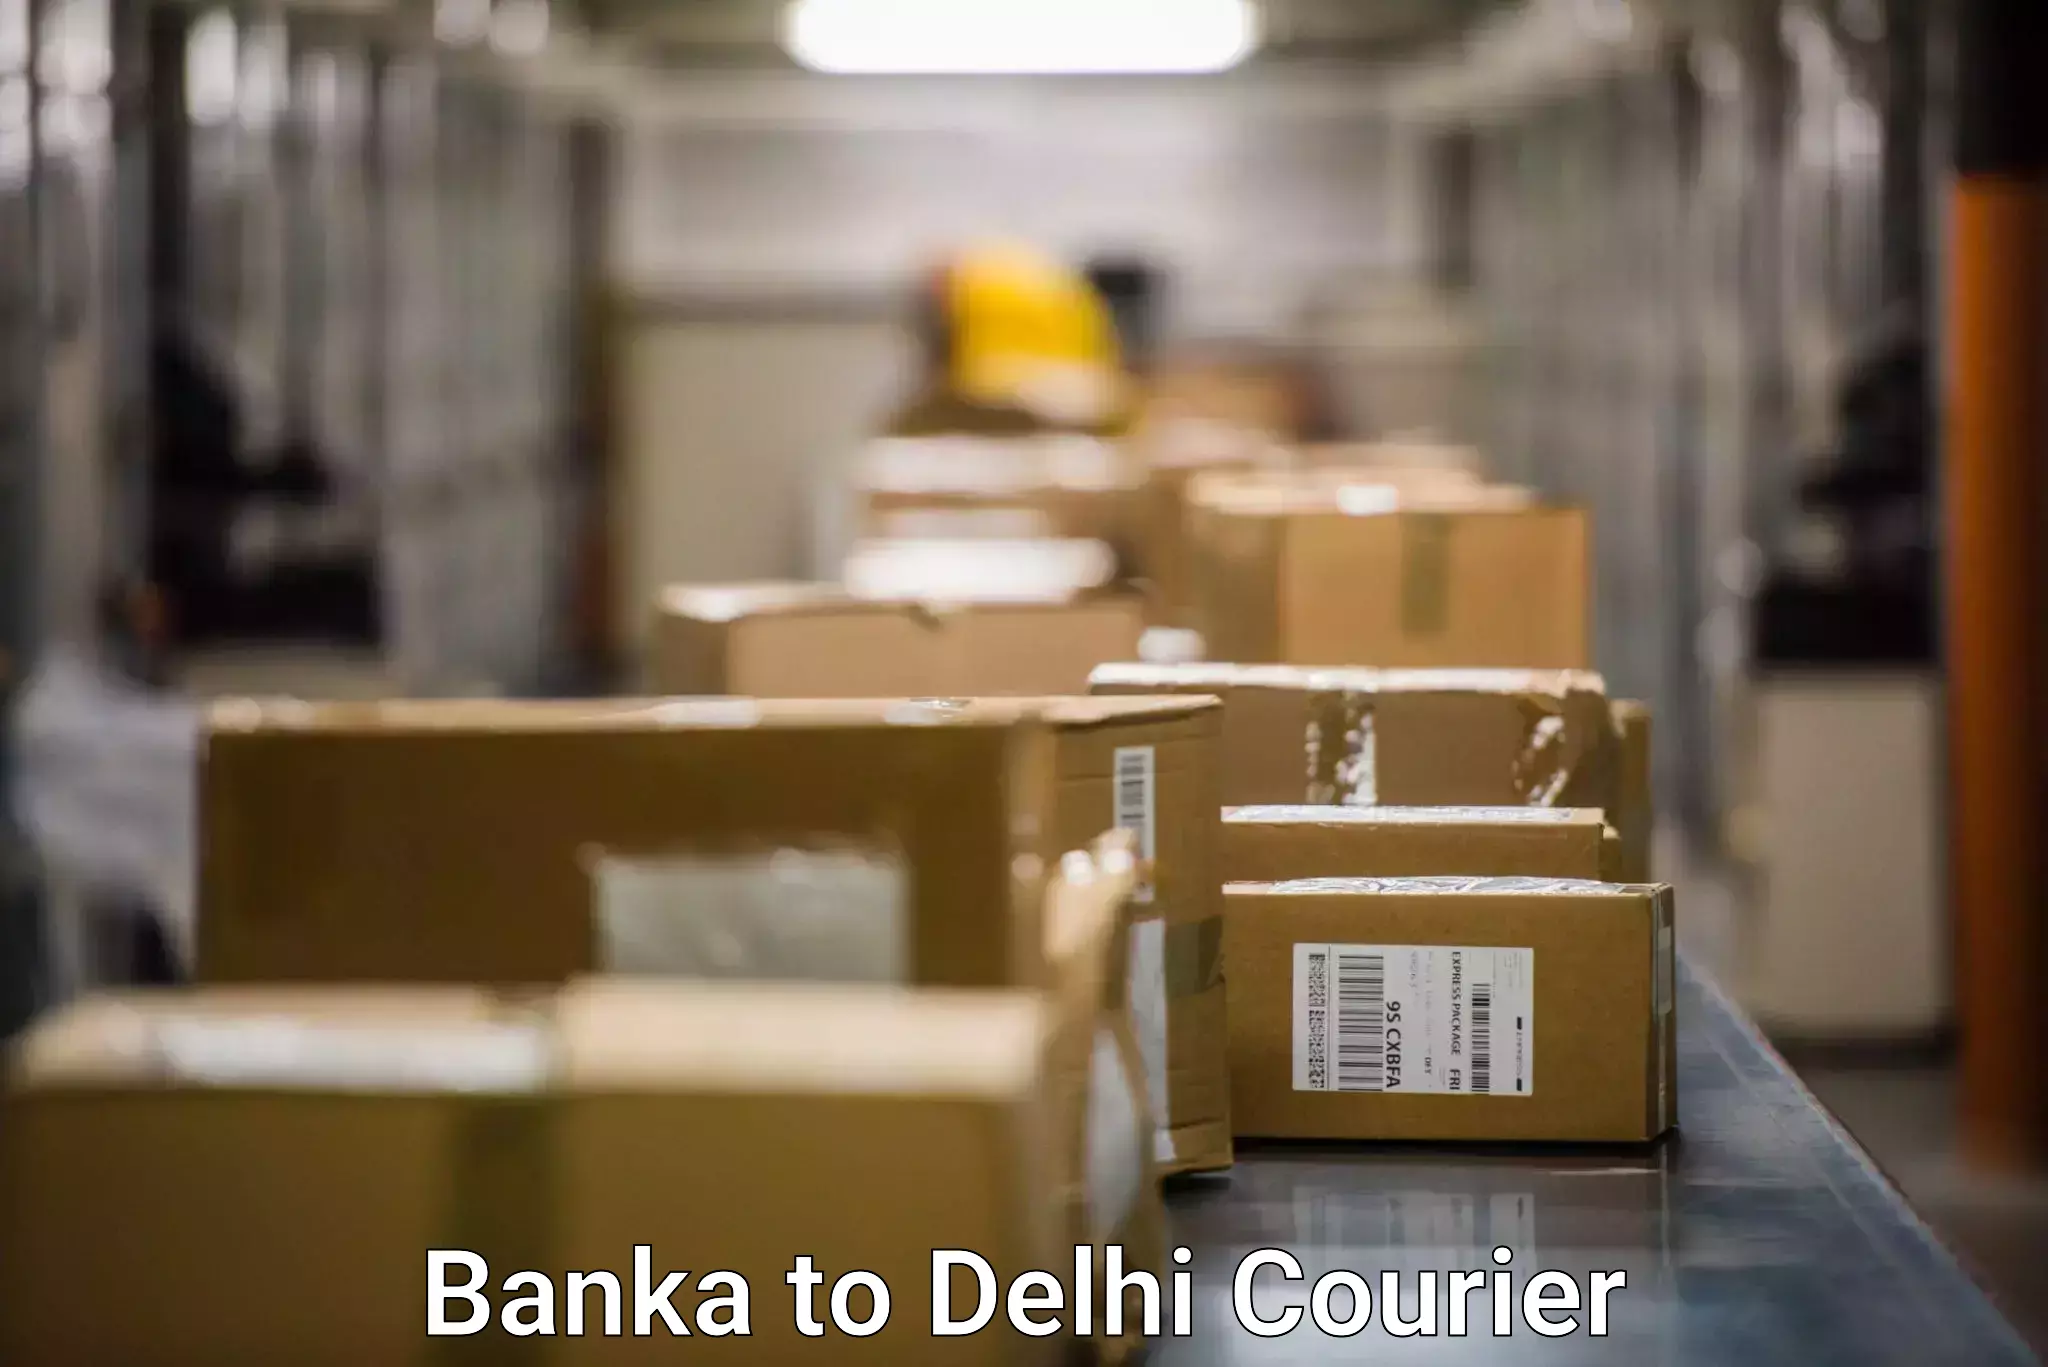 Premium delivery services Banka to Delhi